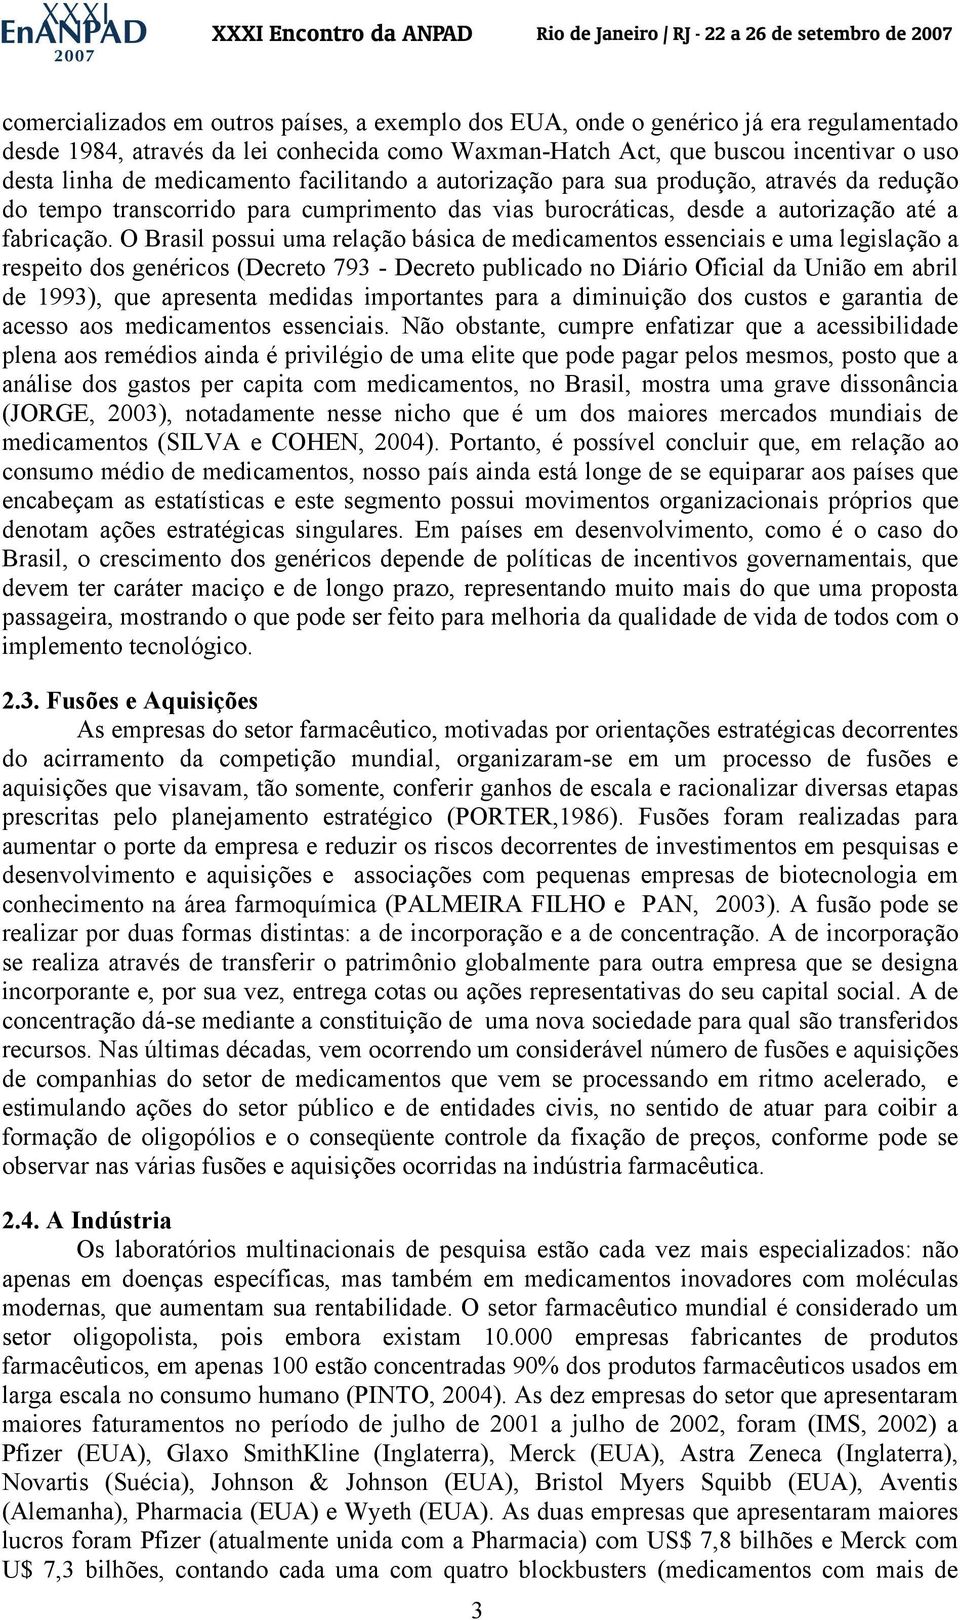 O Brasil possui uma relação básica de medicamentos essenciais e uma legislação a respeito dos genéricos (Decreto 793 - Decreto publicado no Diário Oficial da União em abril de 1993), que apresenta